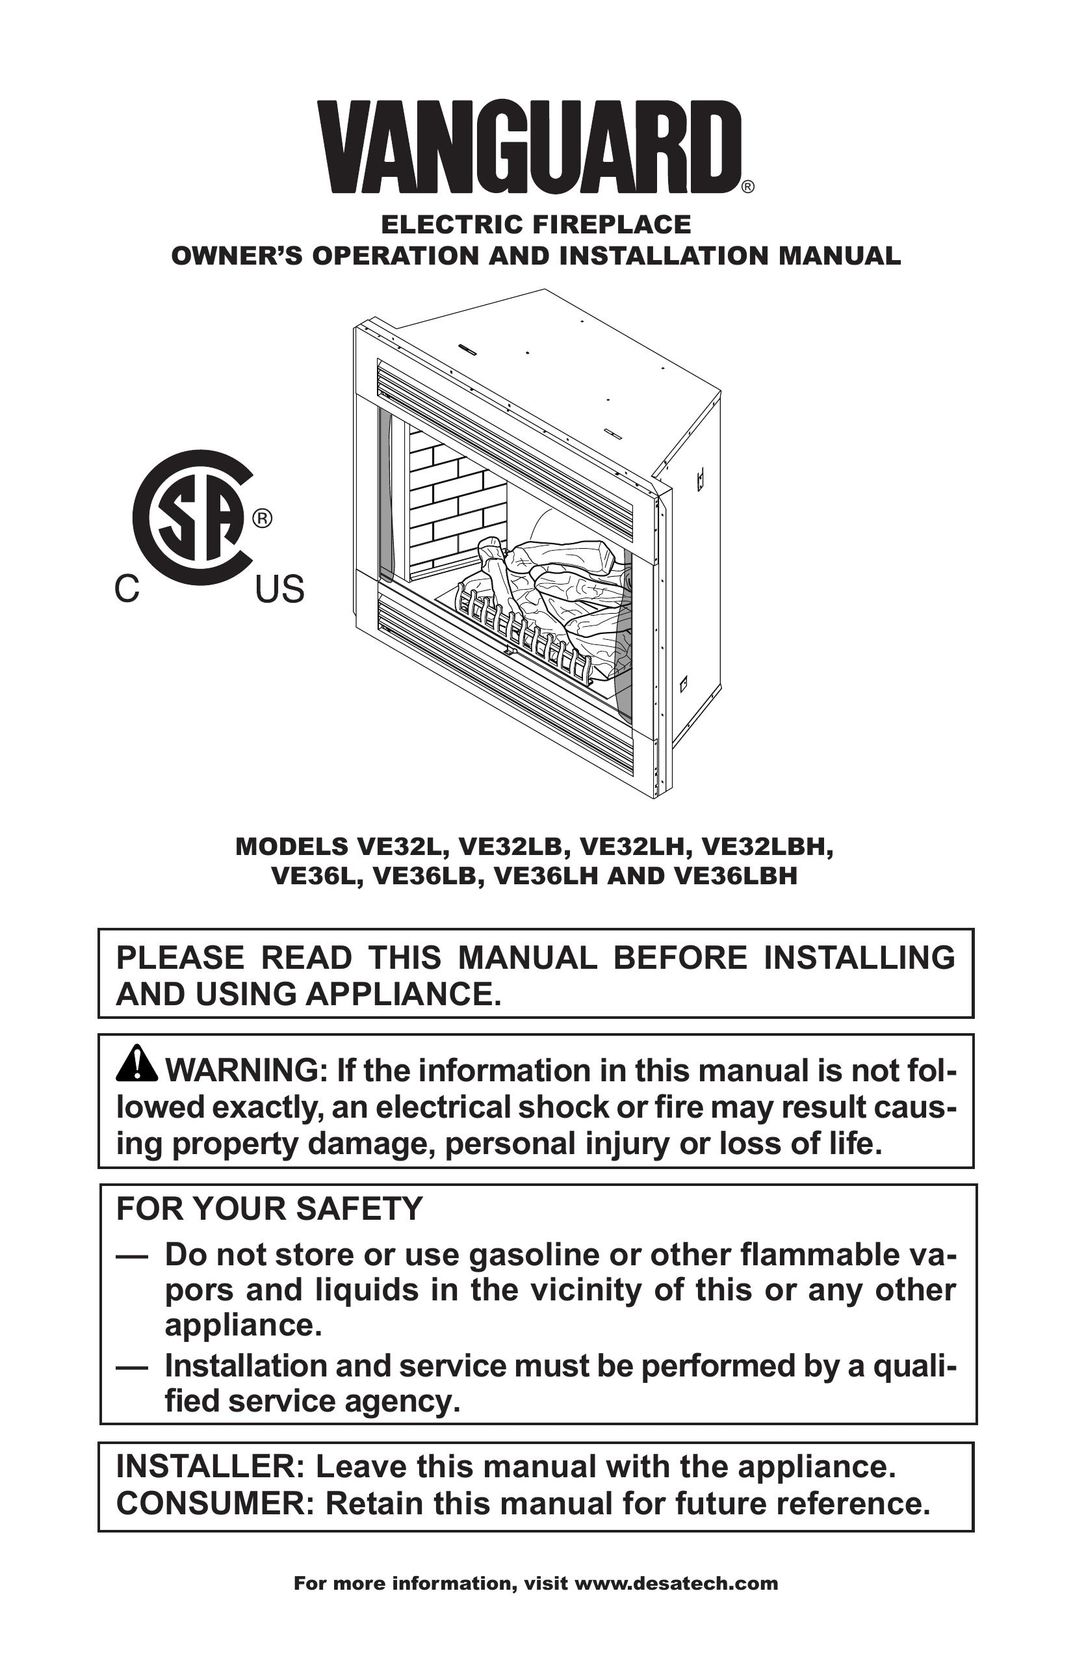 Vanguard VE32LBH Indoor Fireplace User Manual